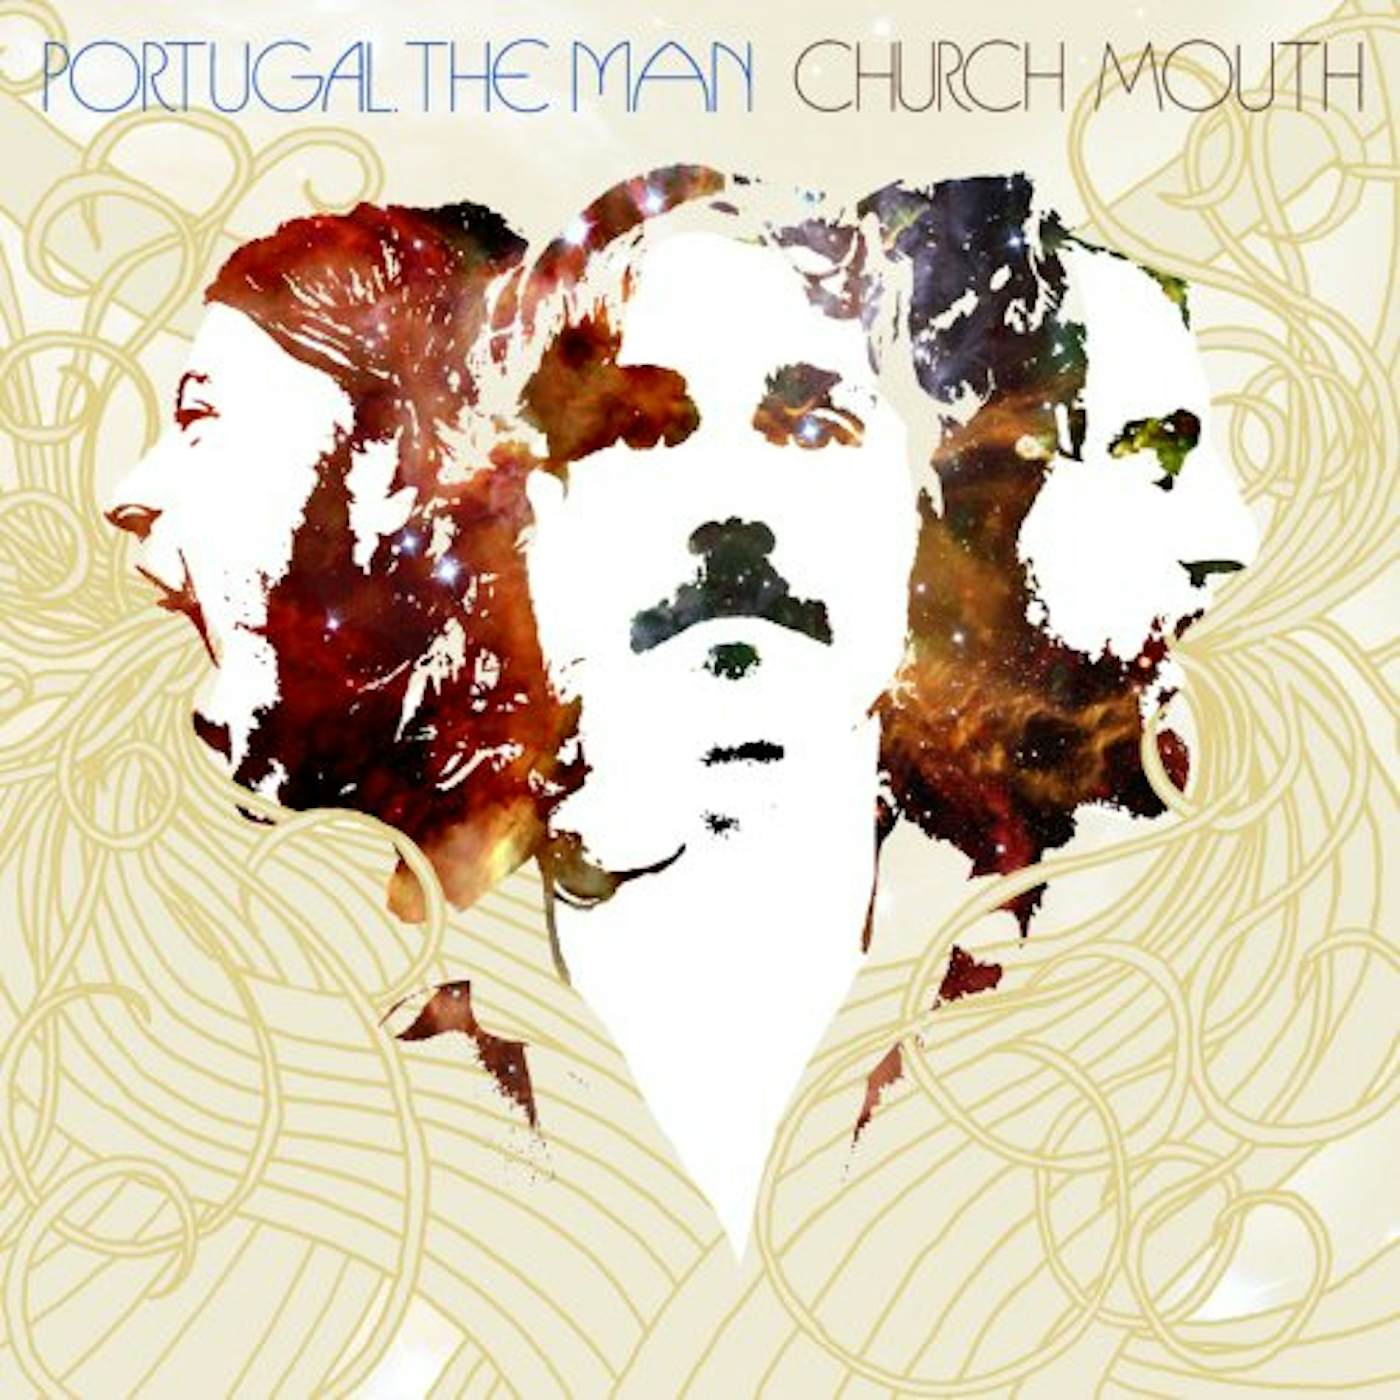 Portugal. The Man CHURCH MOUTH CD